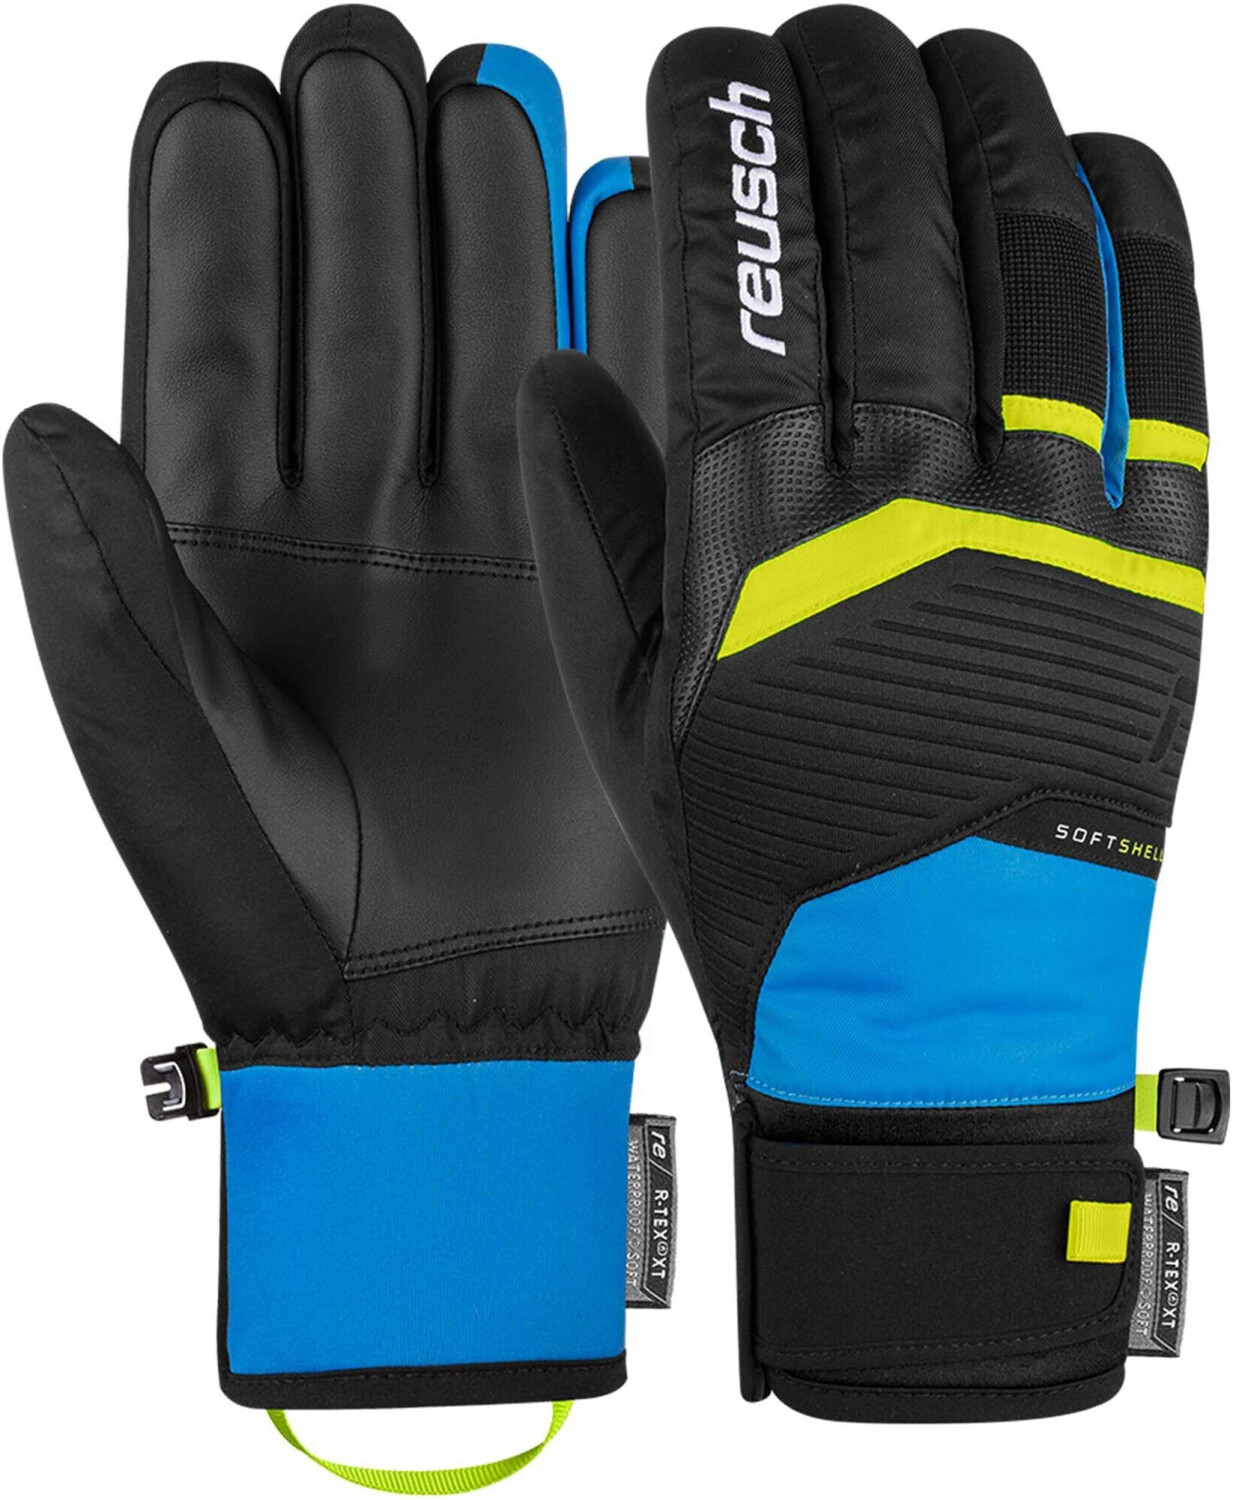 XT Handschuhe (6101205) R-TEX Venom 44,95 € bei Reusch ab | schwarz/blau/gelb Preisvergleich